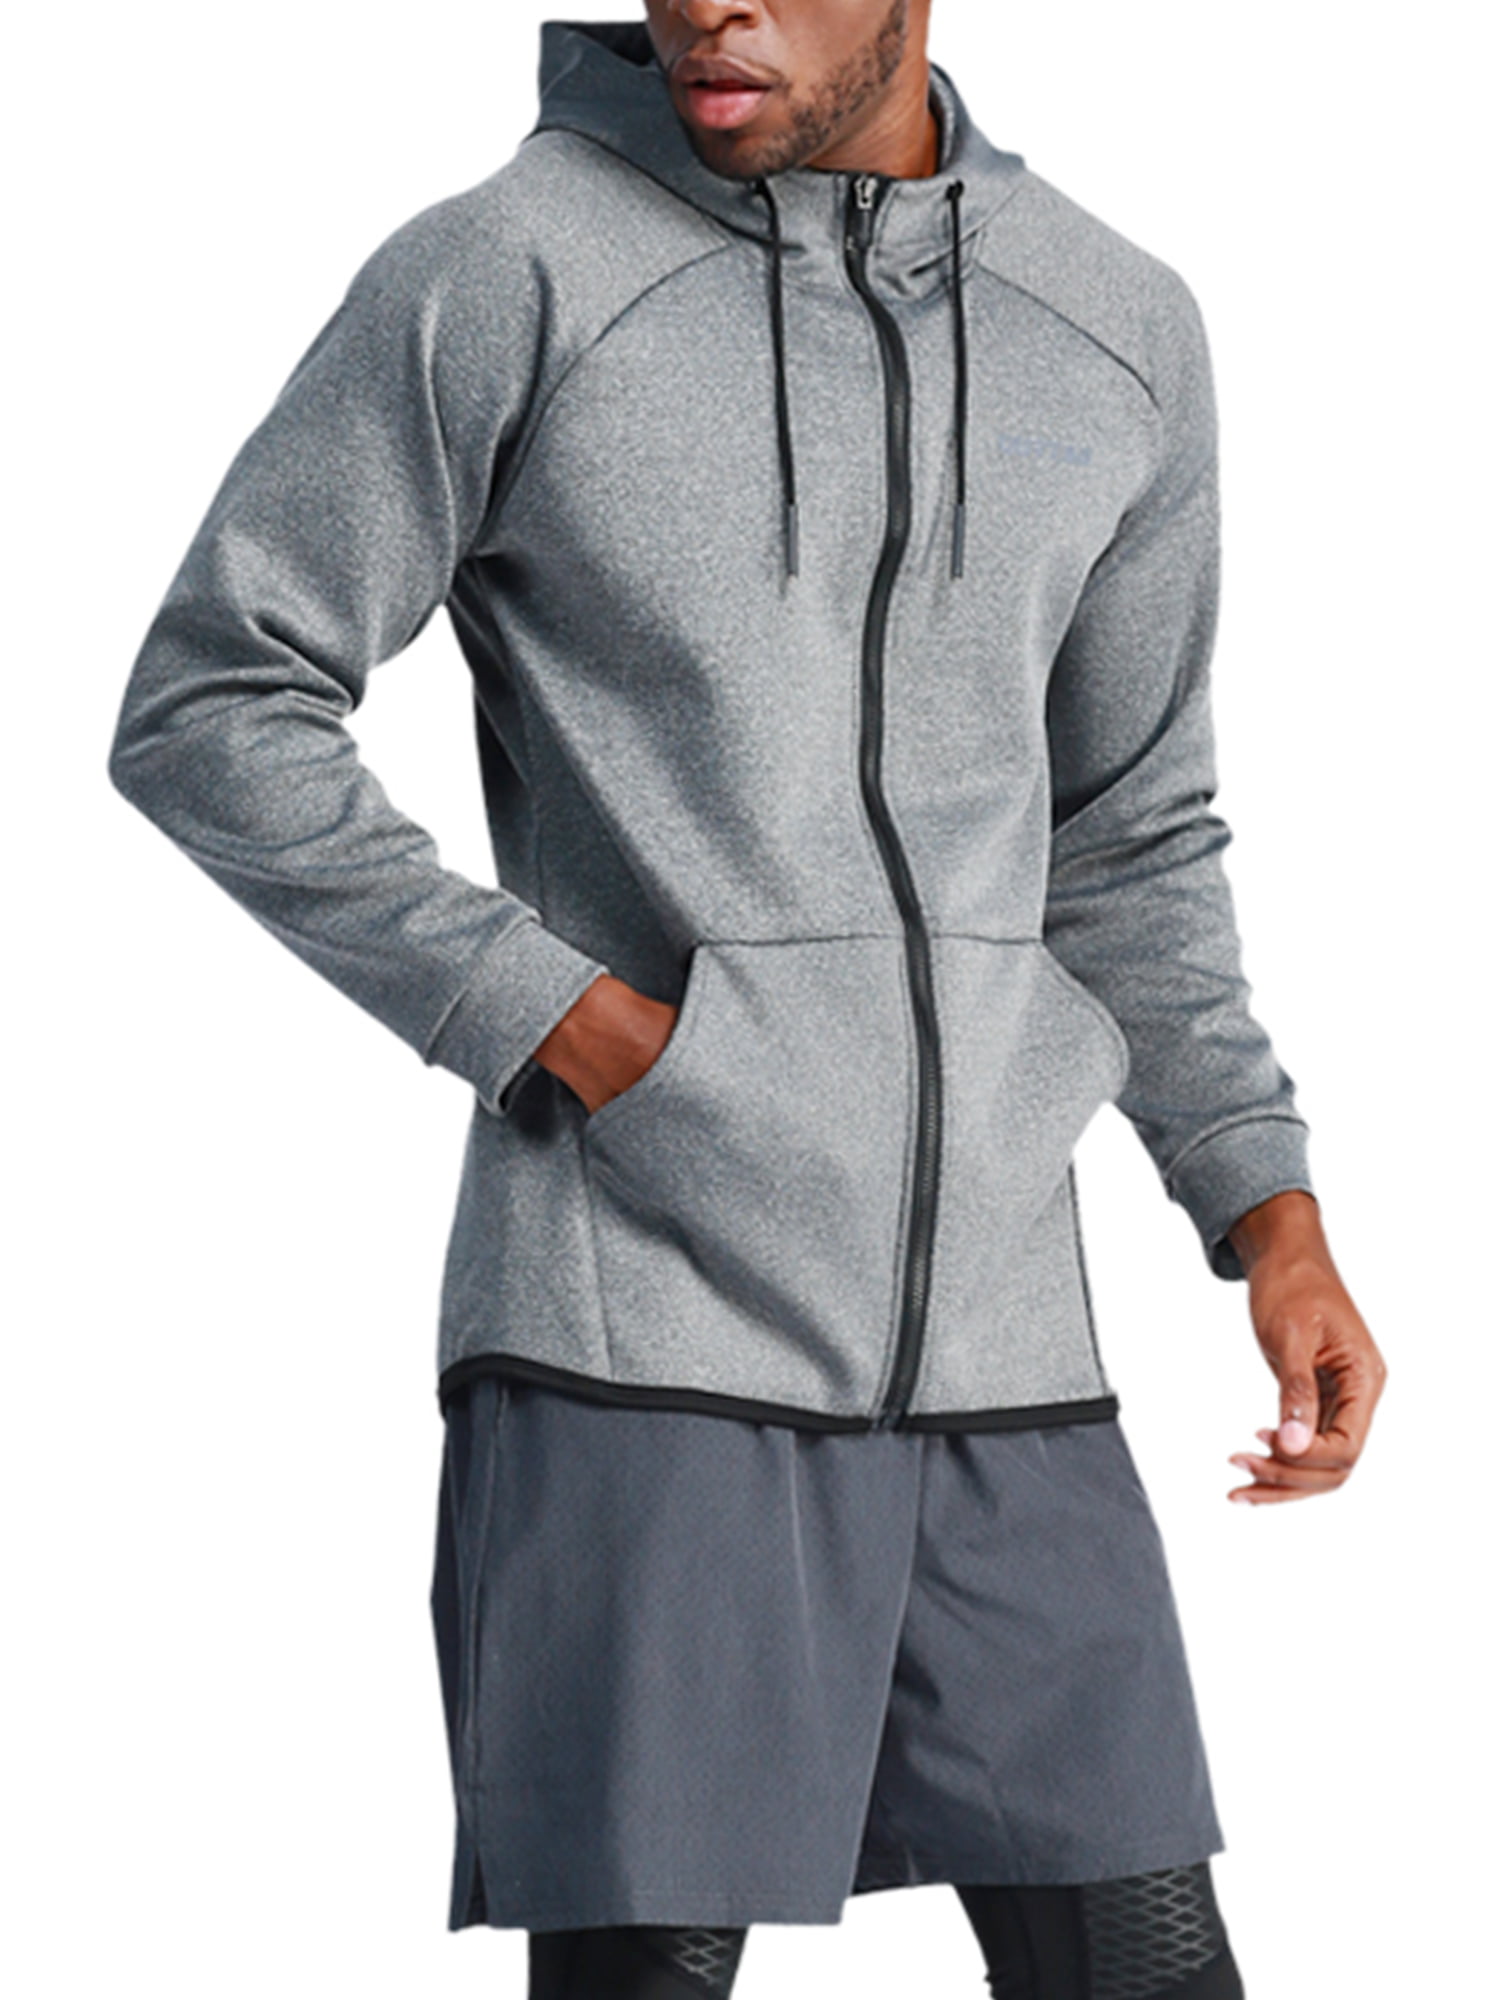 Men Sweatshirt Pullover Zip Up Sports Hoodie Hood Sweat Slim Fit Jacket Coat Top 